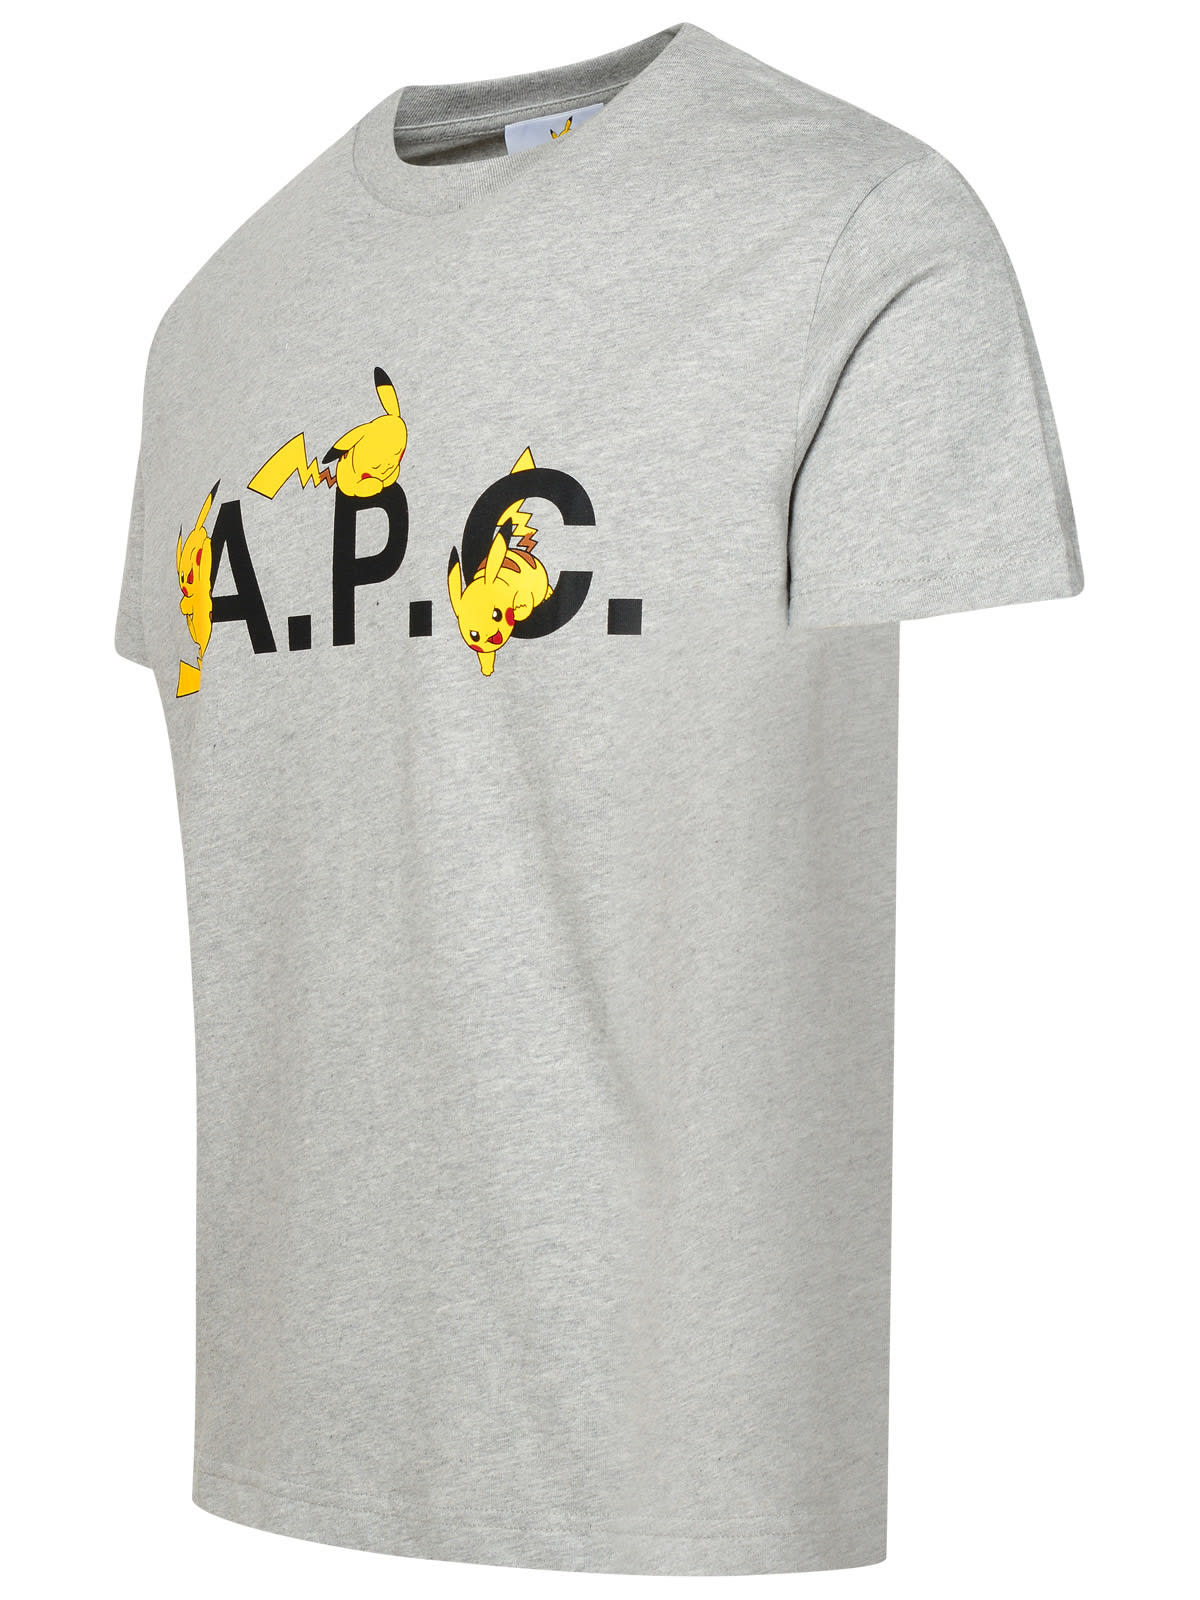 Shop Apc Pokémon Pikachu Grey Cotton T-shirt